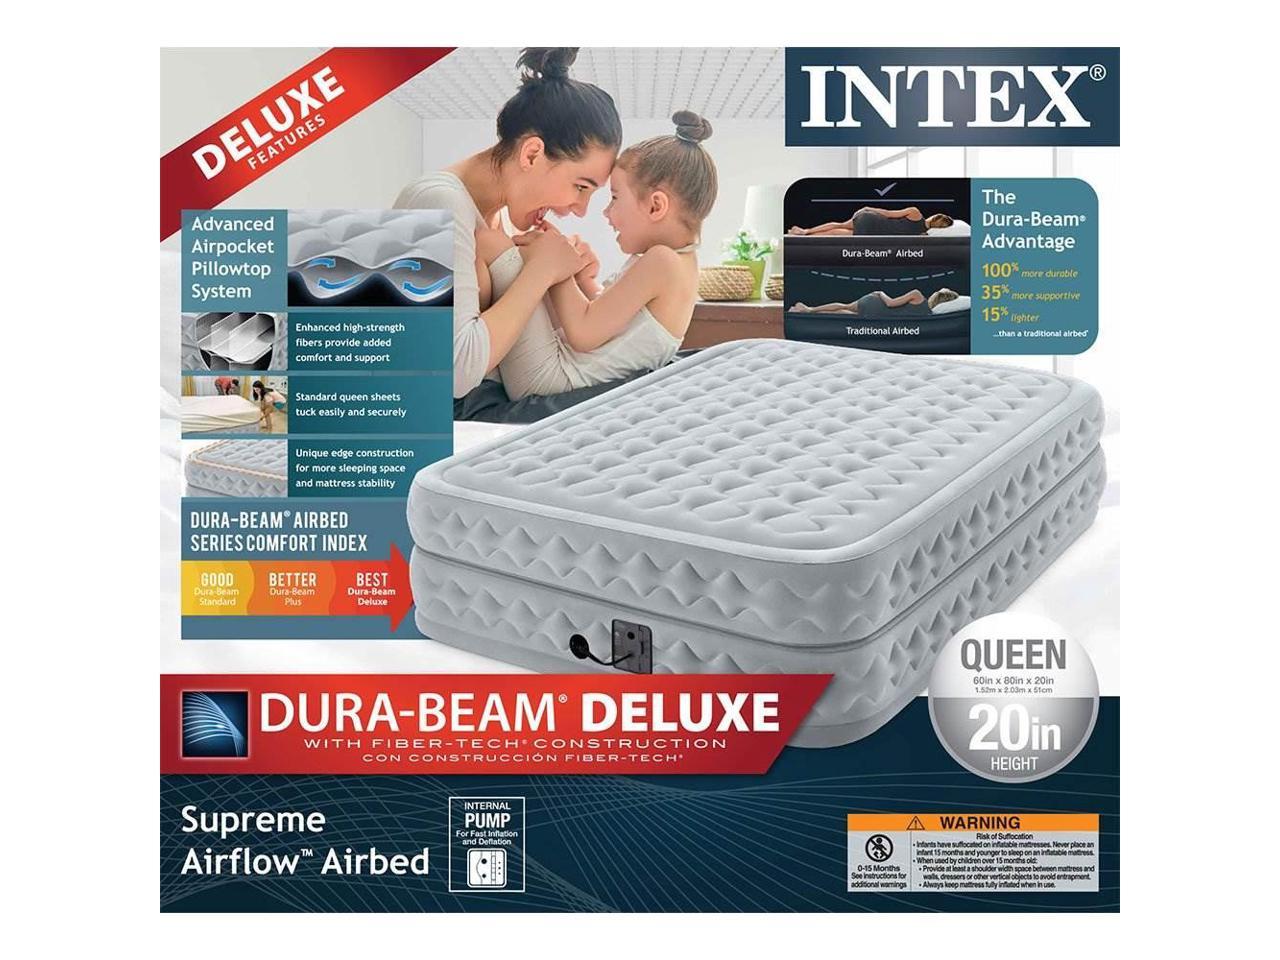 intex supreme airflow twin air mattress